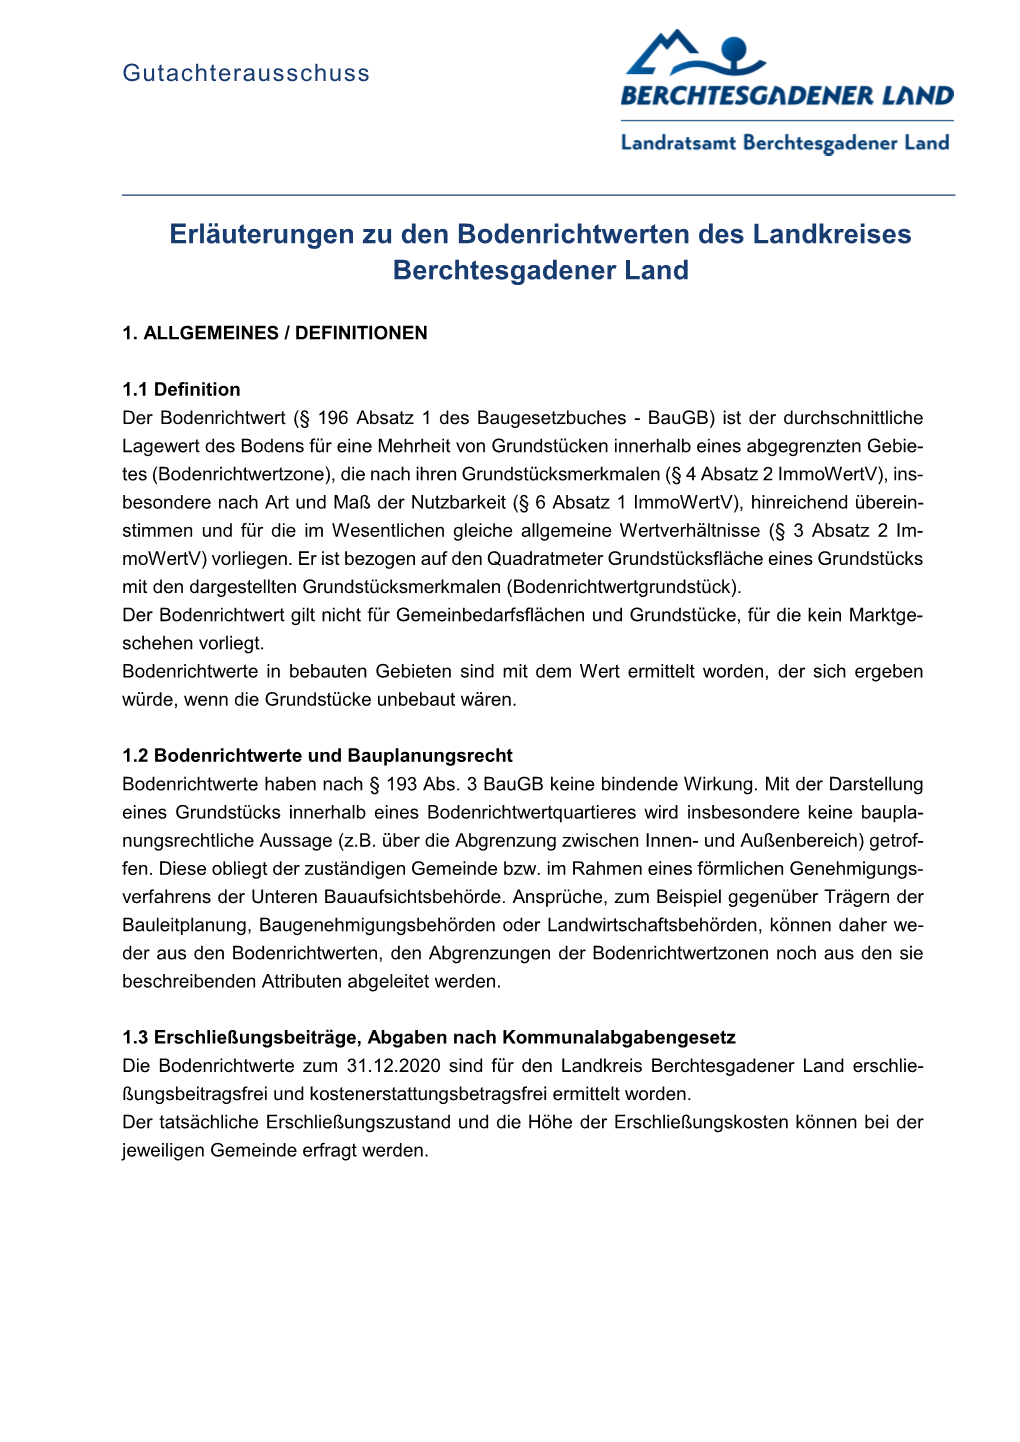 Erläuterungen Zu Den Bodenrichtwerten Des Landkreises Berchtesgadener Land